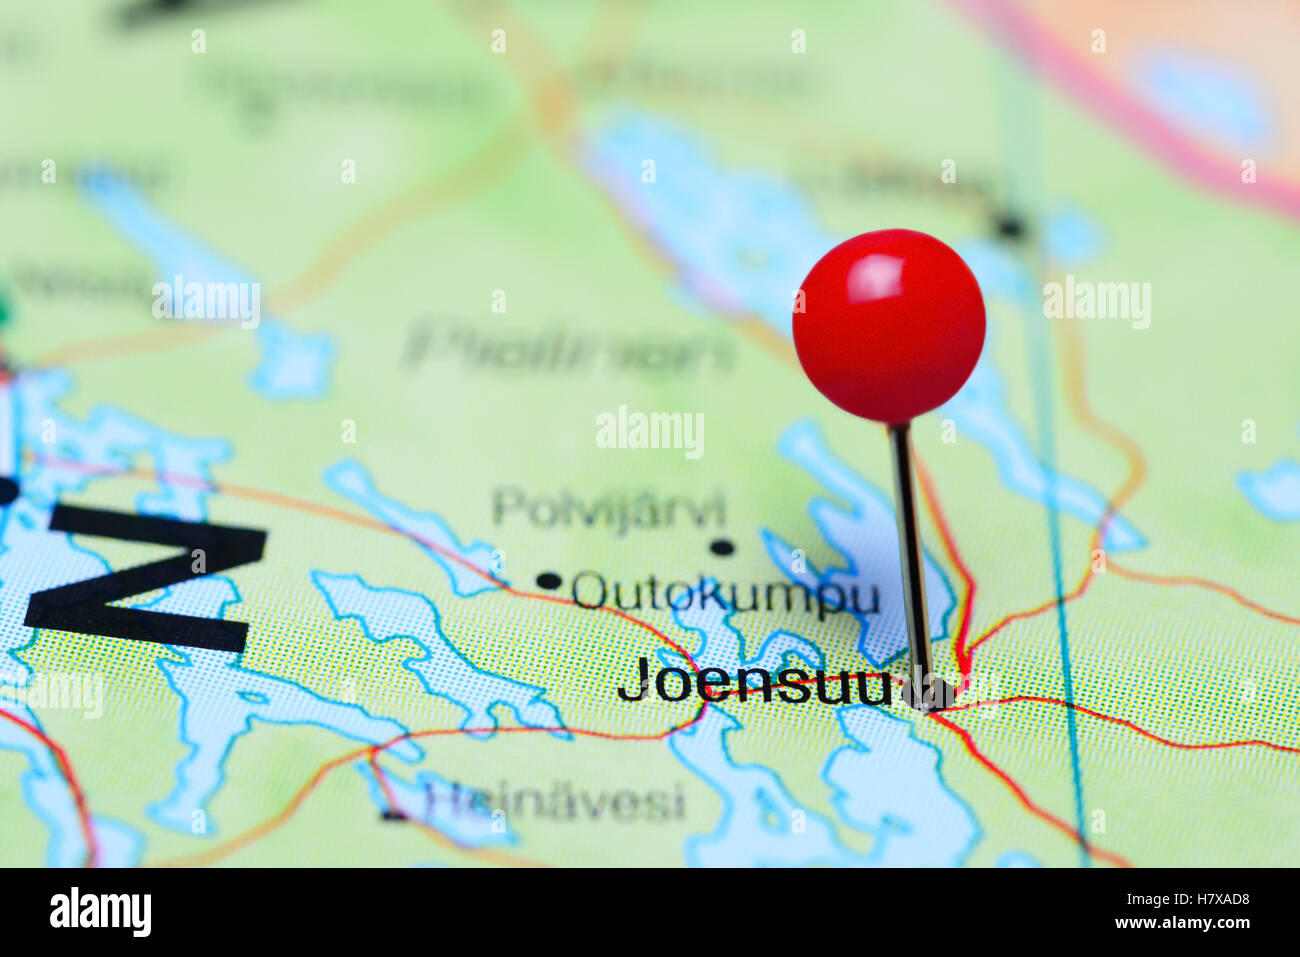 Joensuu pinned on a map of Finland Stock Photo